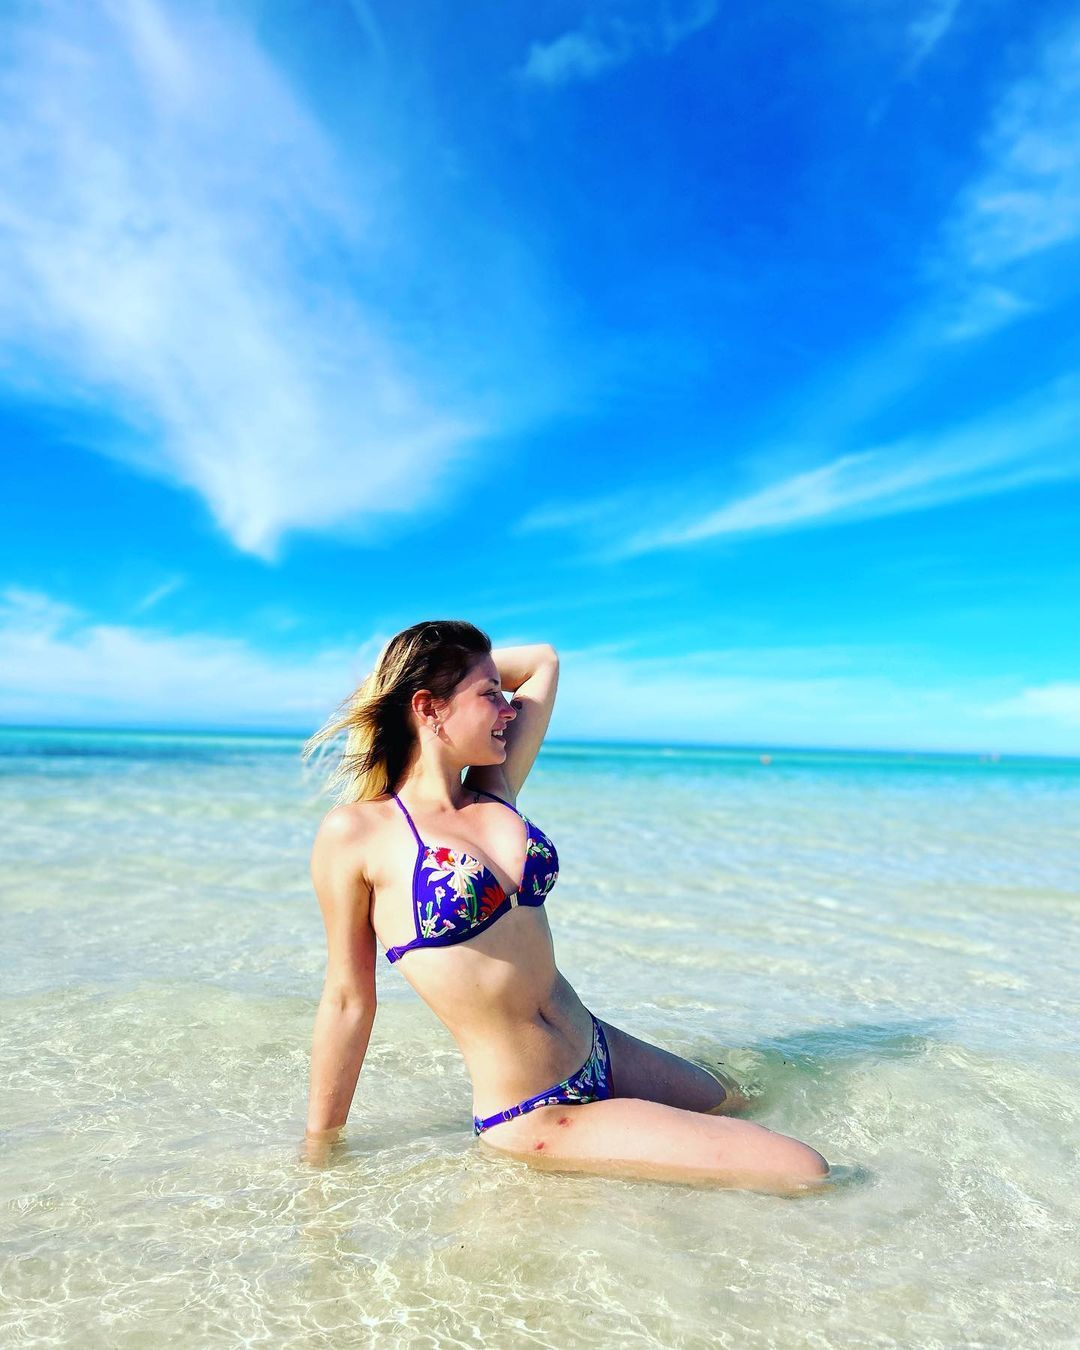 Алёна Косторная опубликовала фото в купальнике с пляжа на Кубе - Чемпионат